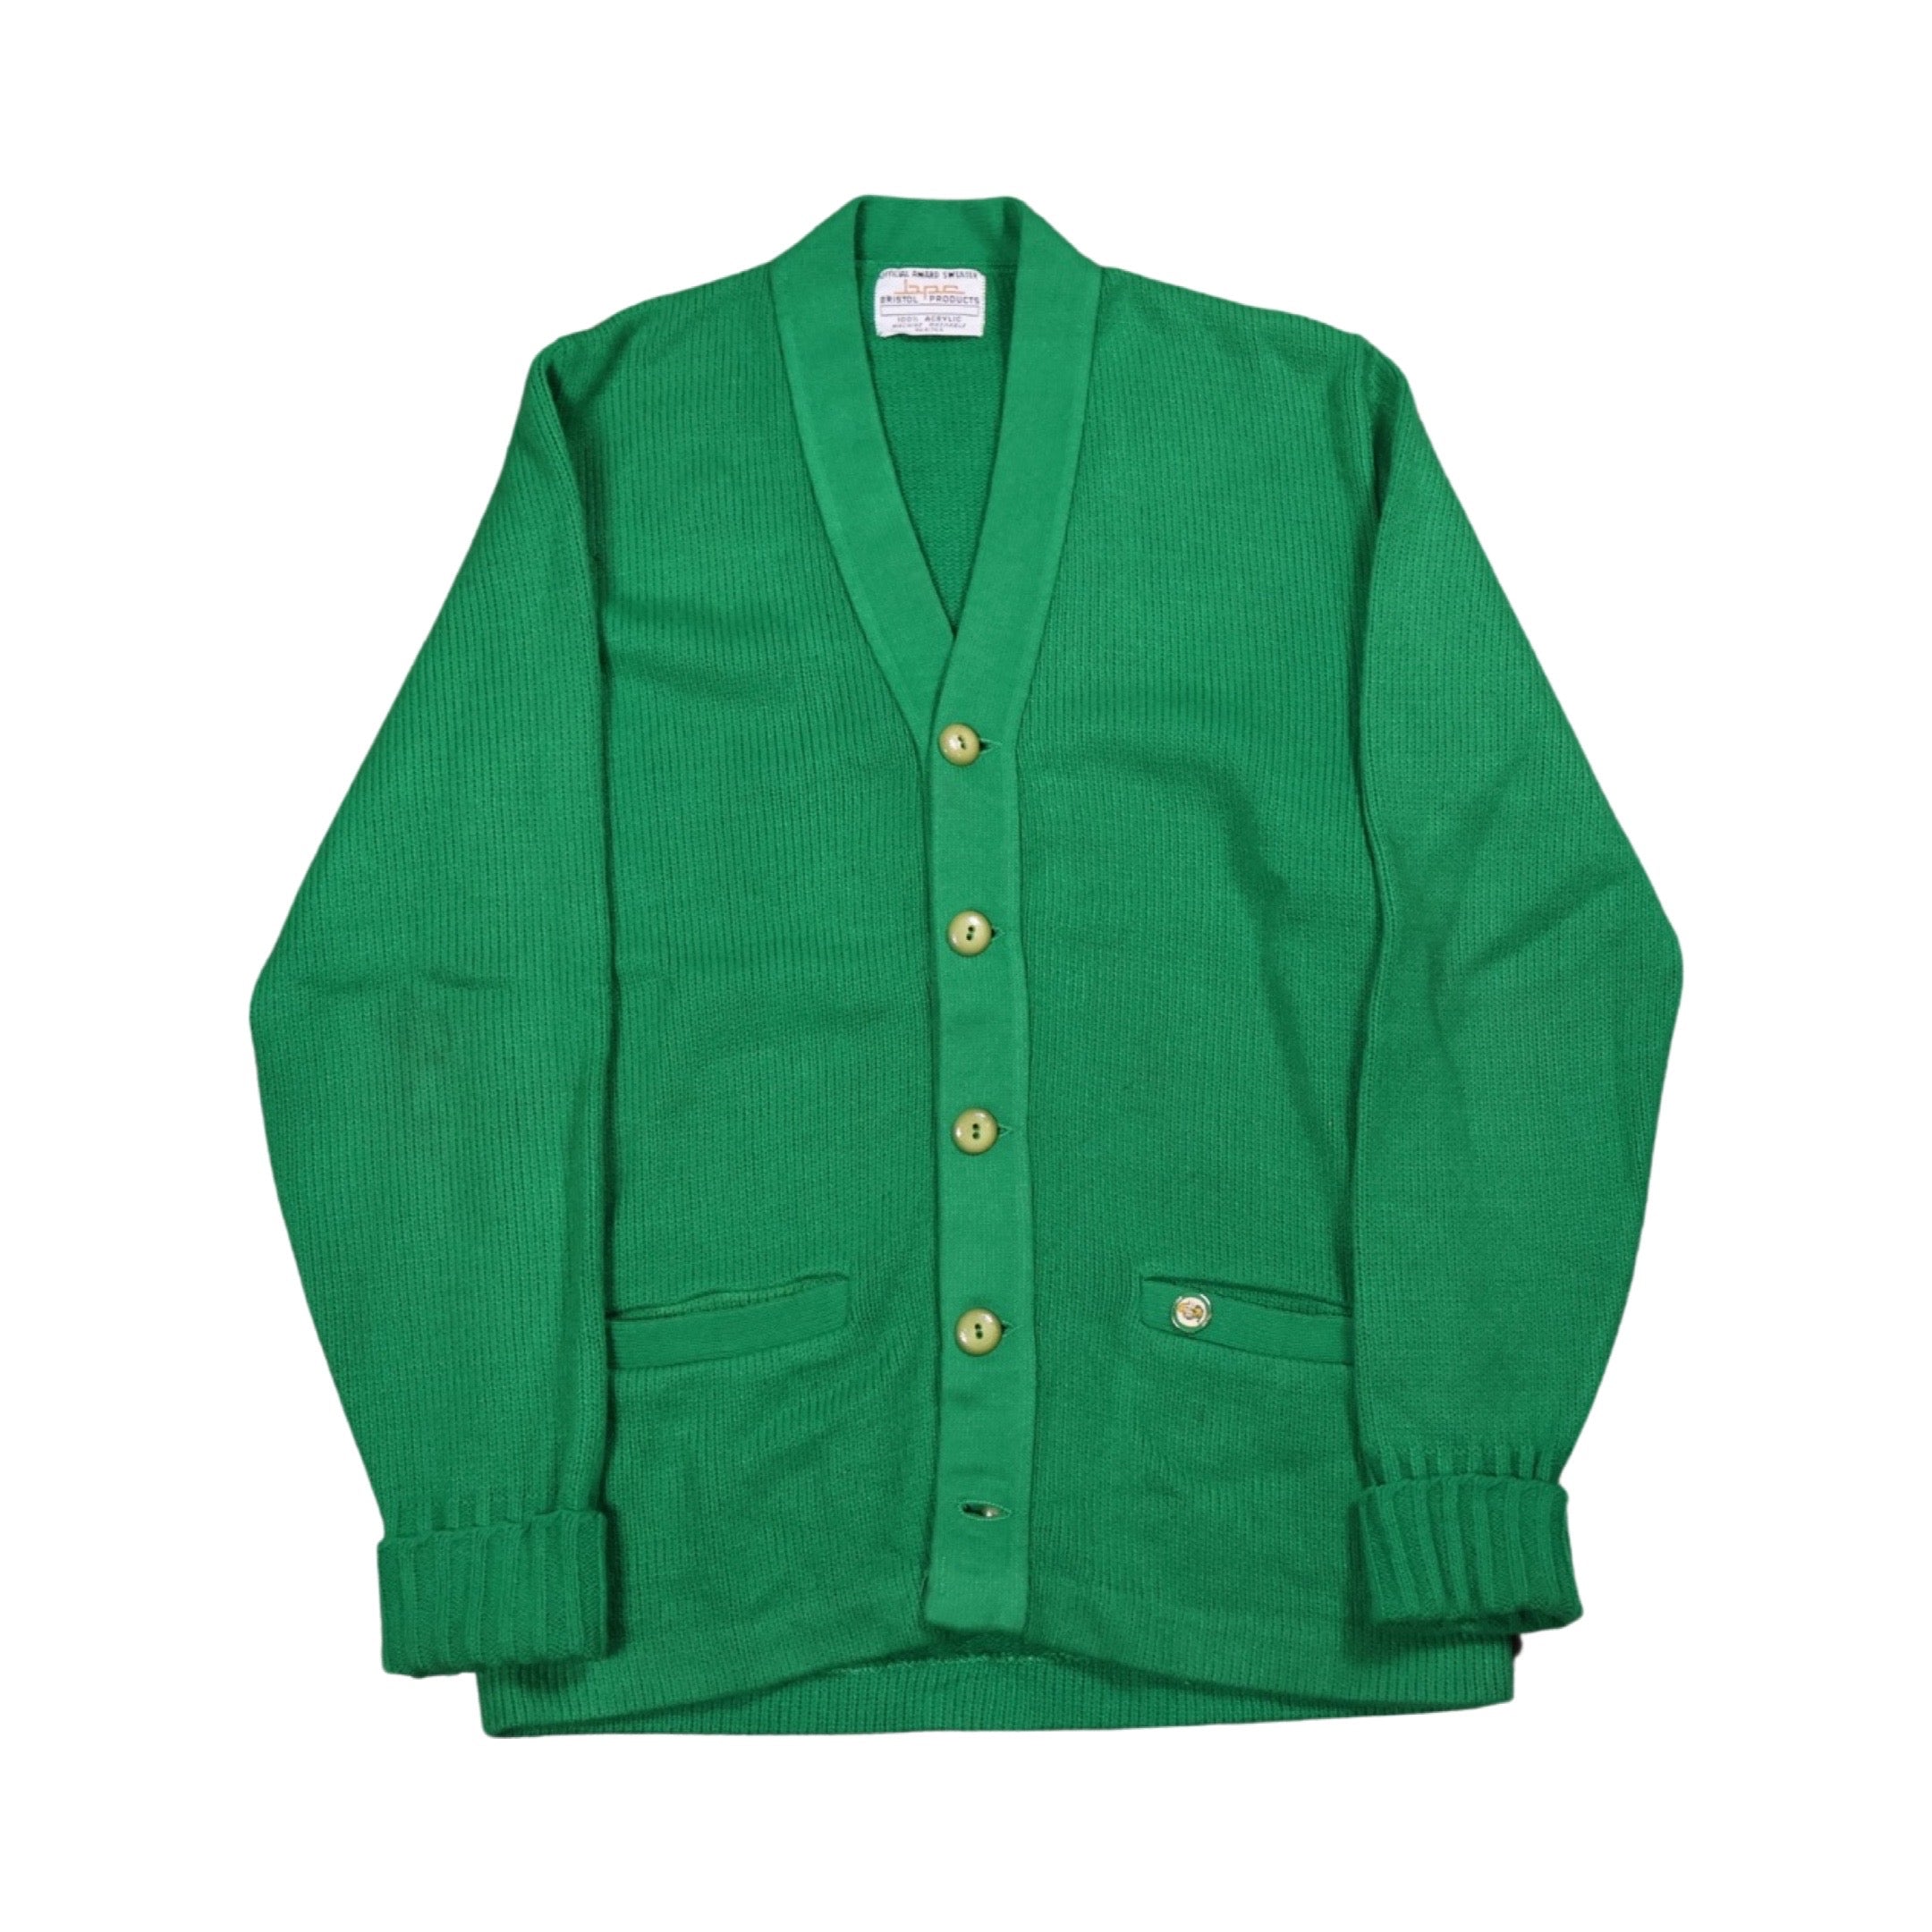 Green 70s Cardigan (Medium)